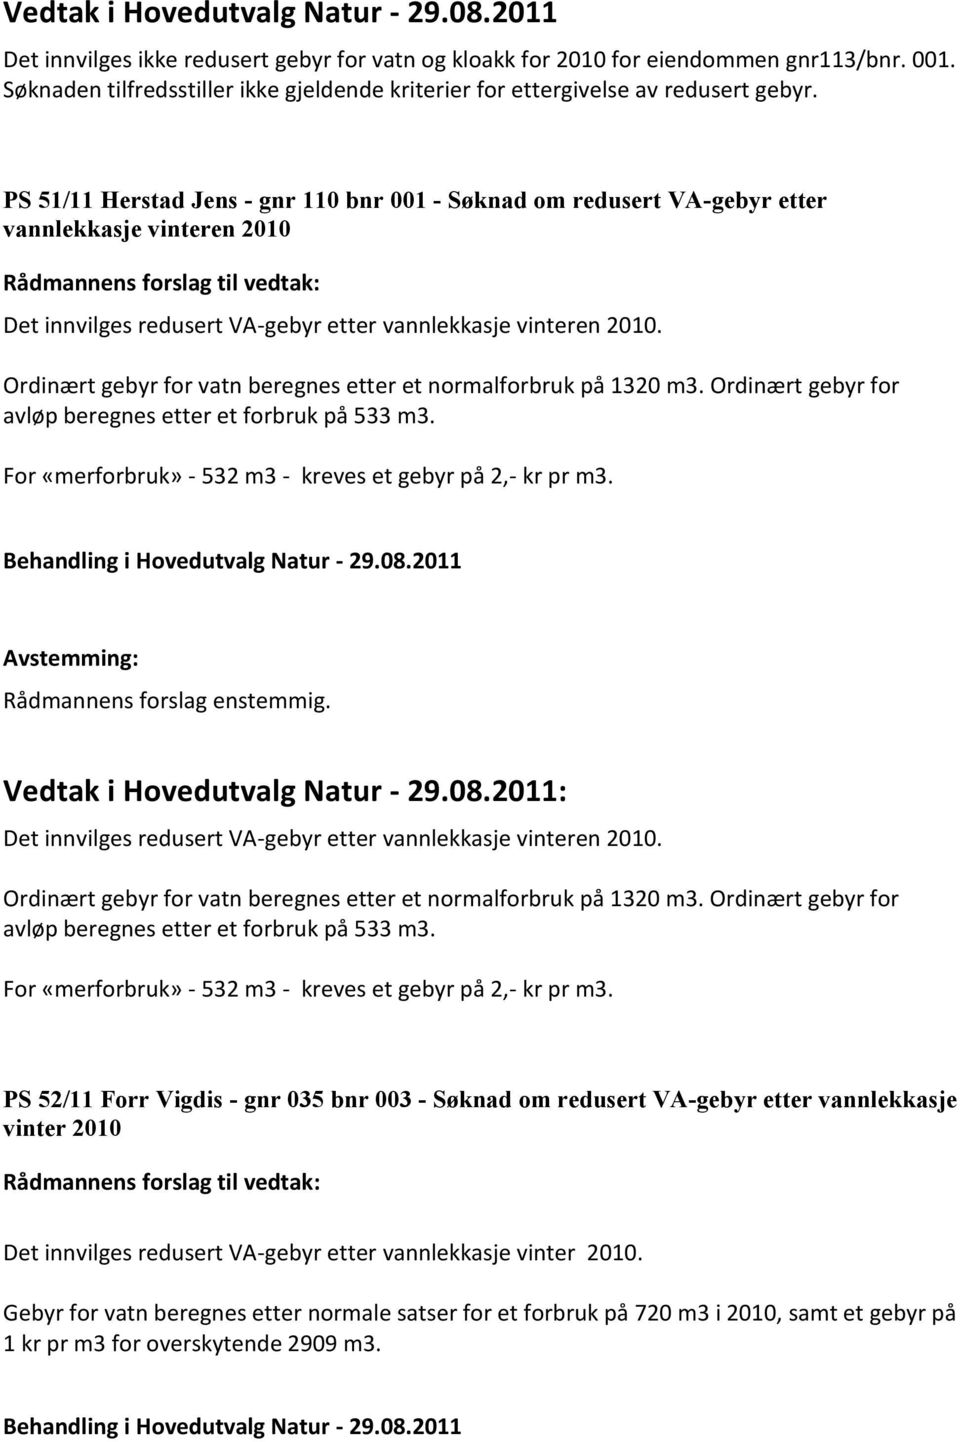 PS 51/11 Herstad Jens - gnr 110 bnr 001 - Søknad om redusert VA-gebyr etter vannlekkasje vinteren 2010 Rådmannens forslag til vedtak: Det innvilges redusert VA-gebyr etter vannlekkasje vinteren 2010.